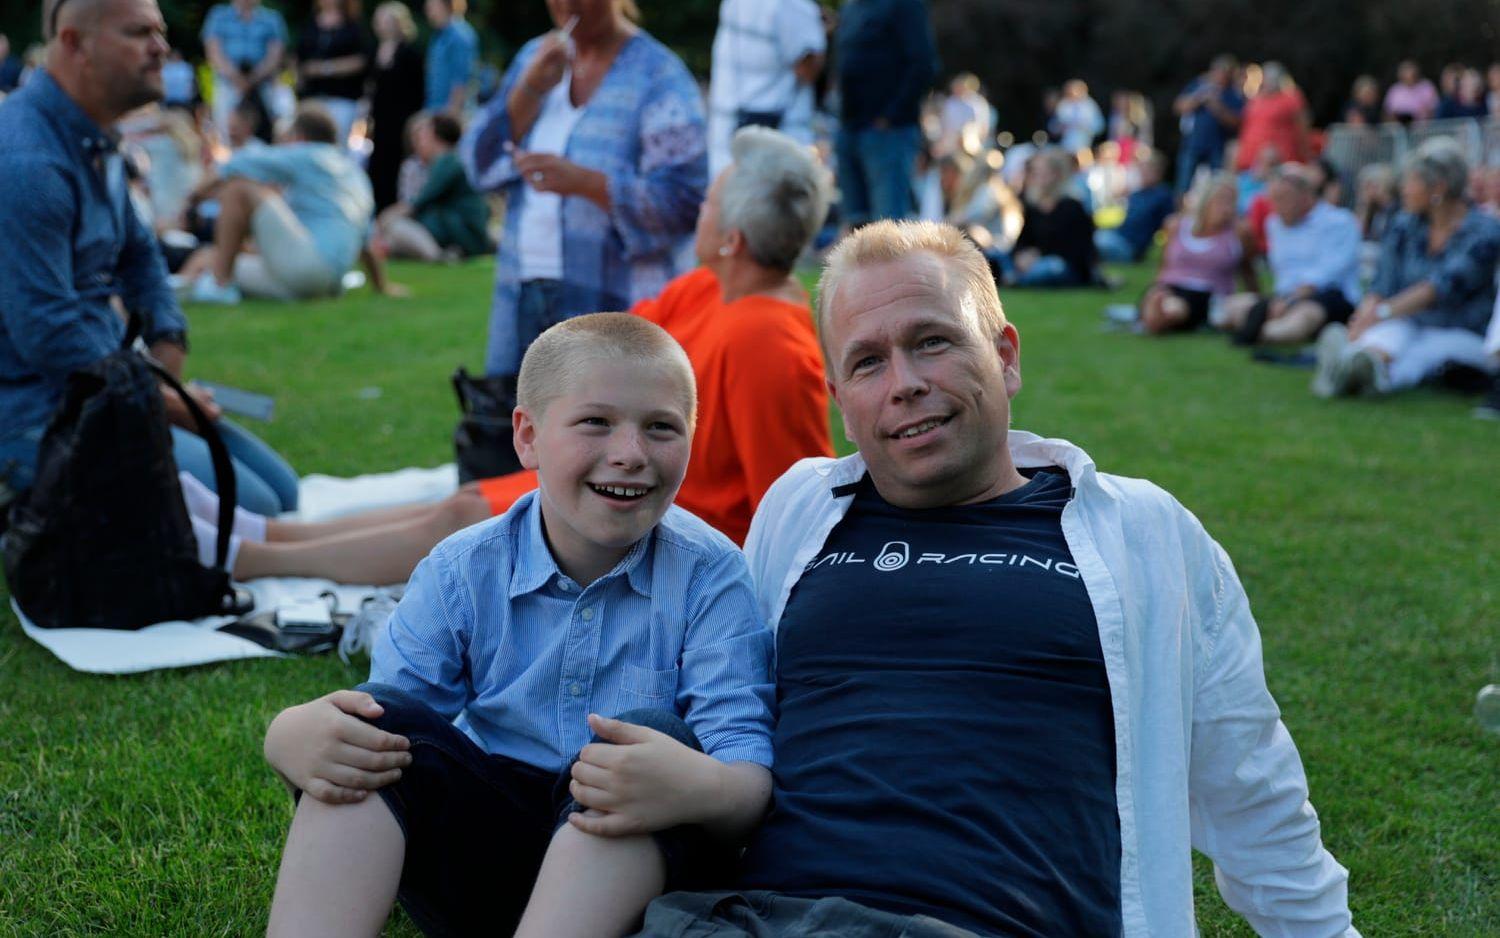 Felix och Fredrik Värnbrink var på plats för att se Per Gessle. Foto: Per Wahlberg.